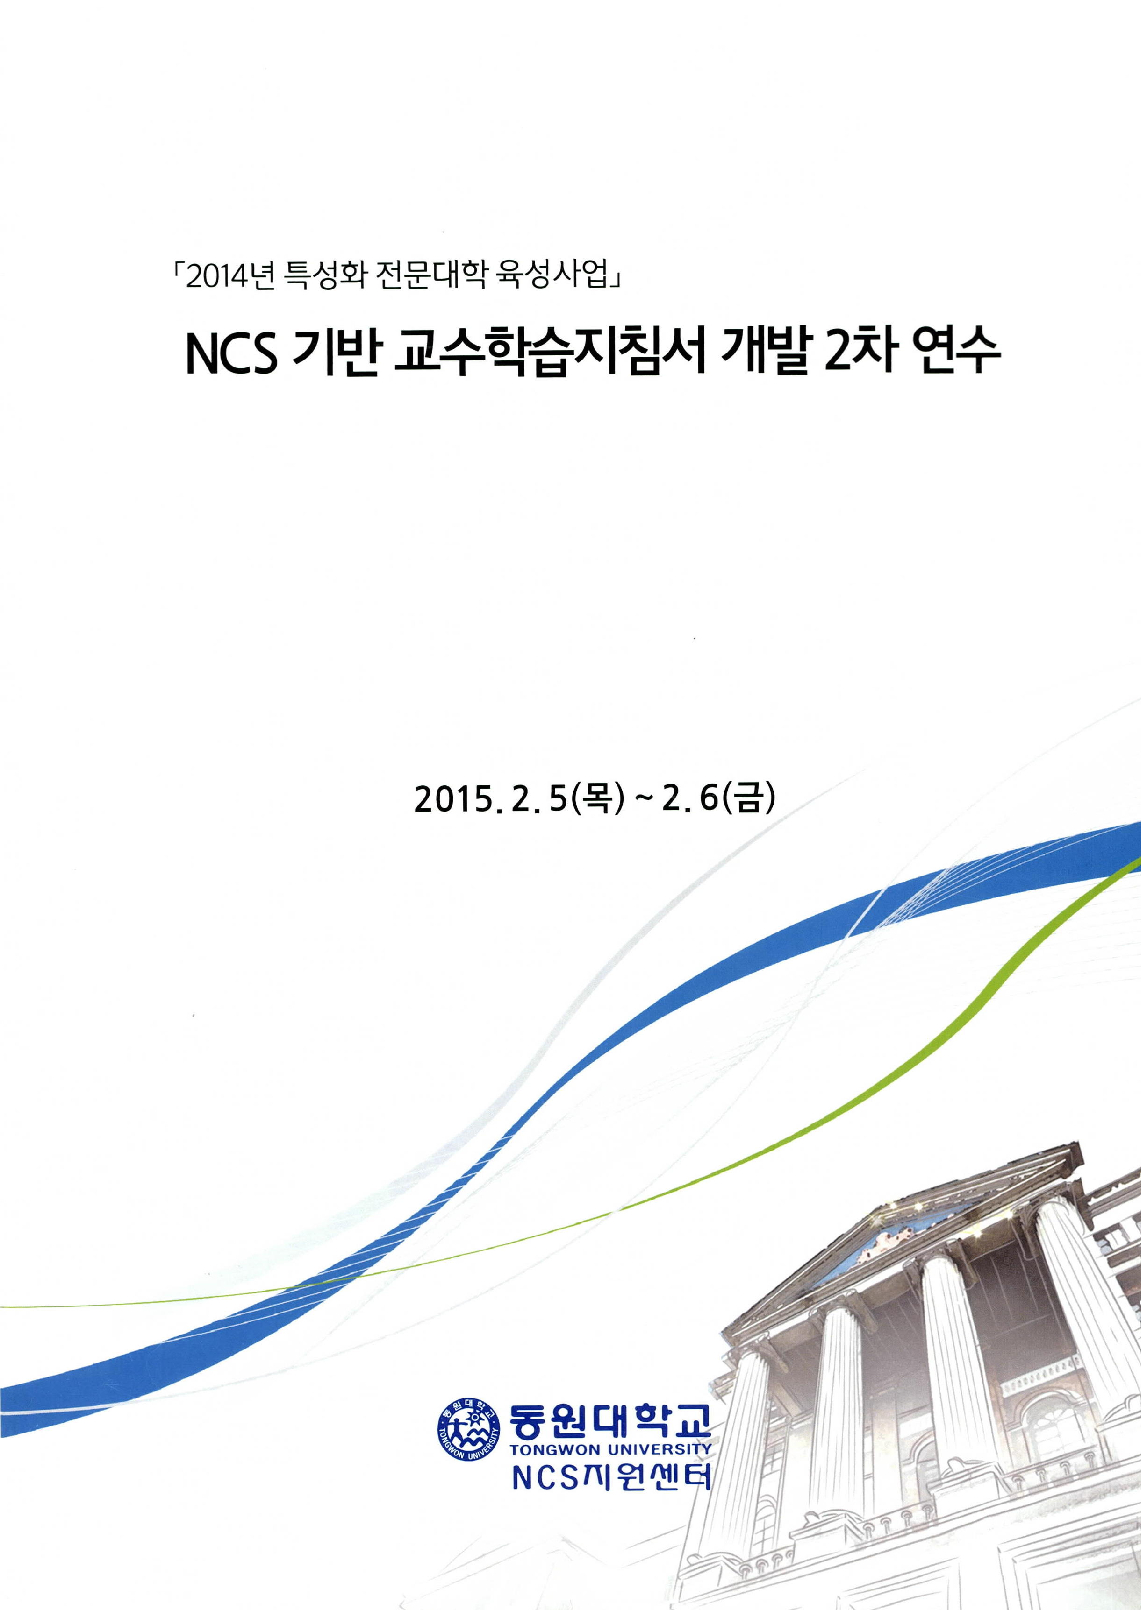 NCS기반 교수학습지침서 개발2차 연수